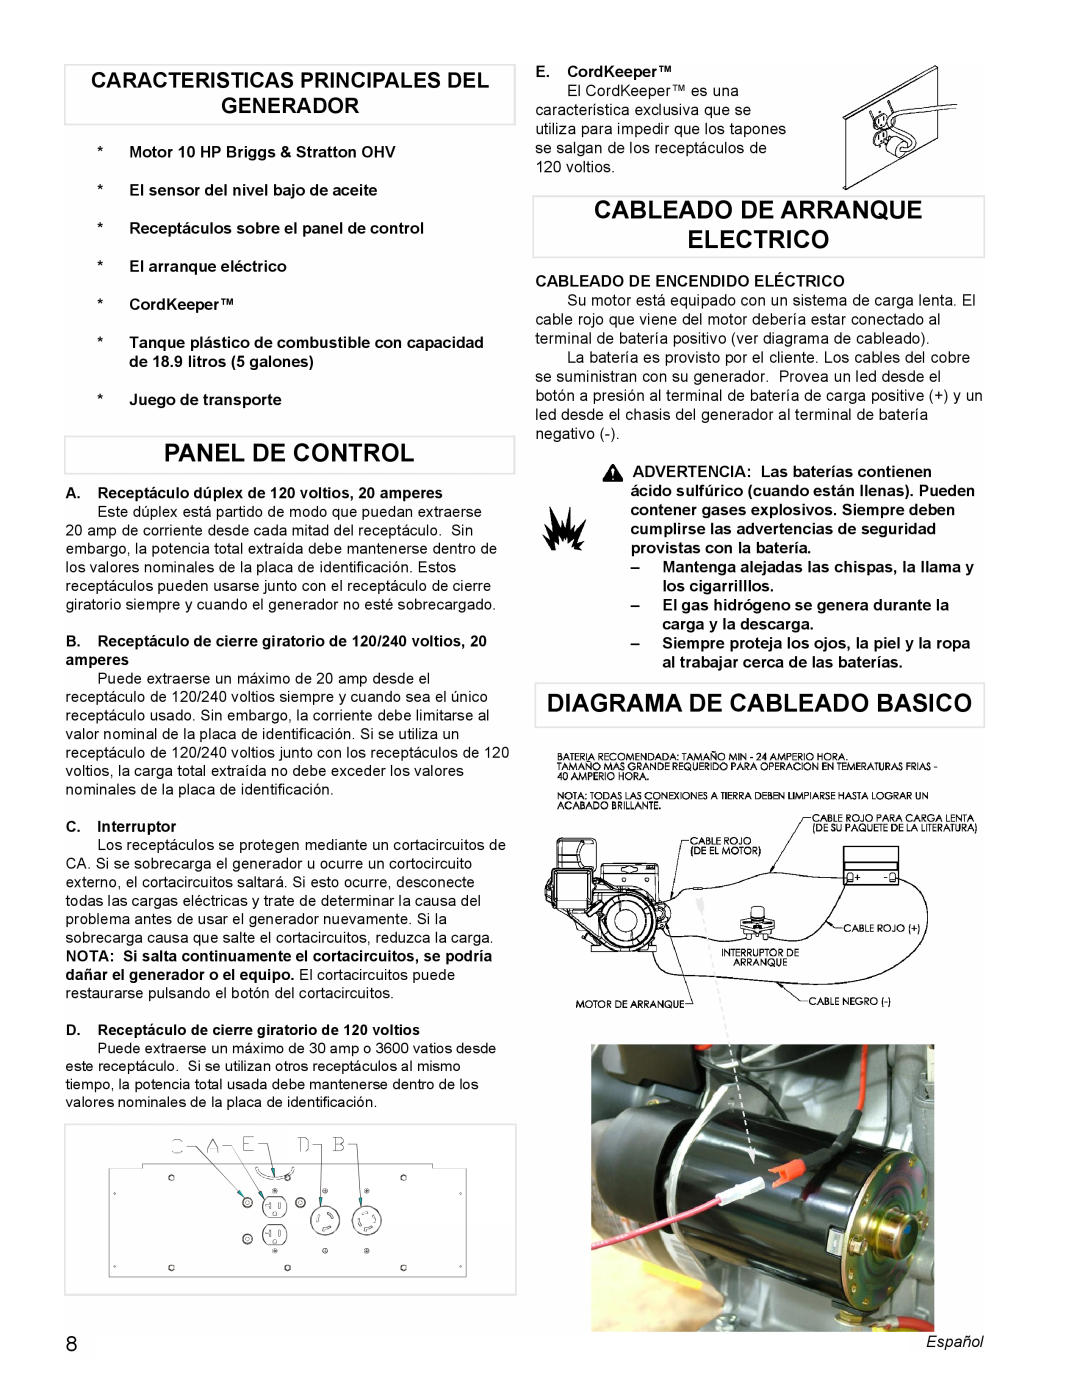 Powermate PM0545001 manual Panel De Control, Cableado De Arranque Electrico, Diagrama De Cableado Basico 